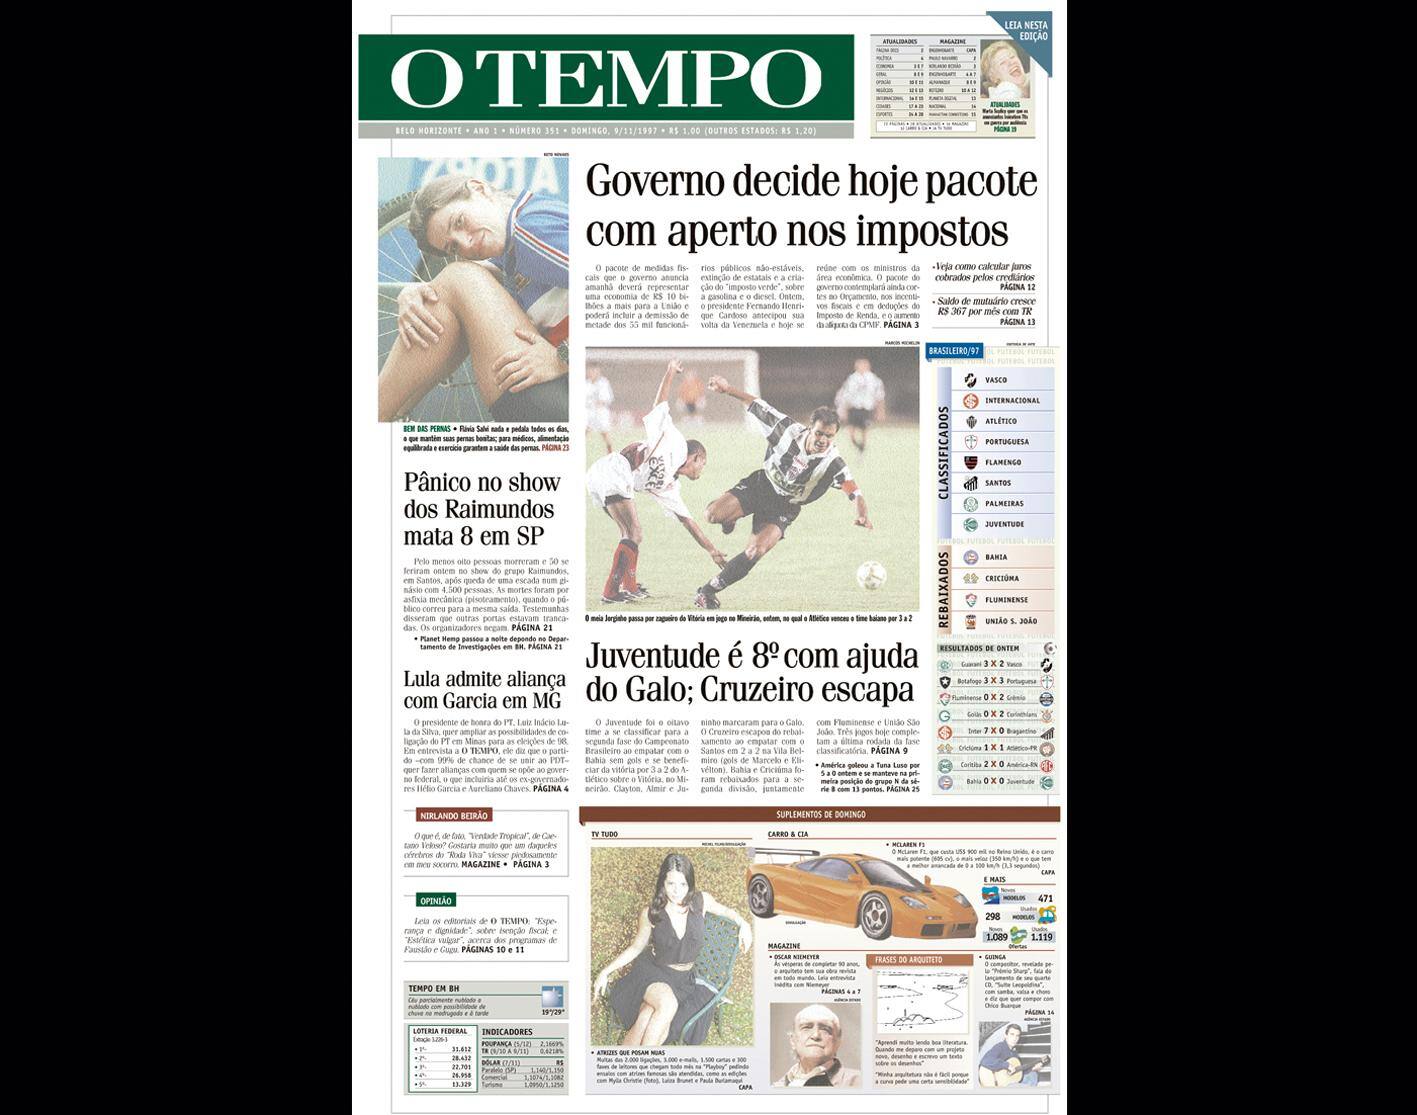 Capa do jornal O TEMPO no dia 9.11.1997; resgate do acervo marca as comemorações dos 25 anos da publicação